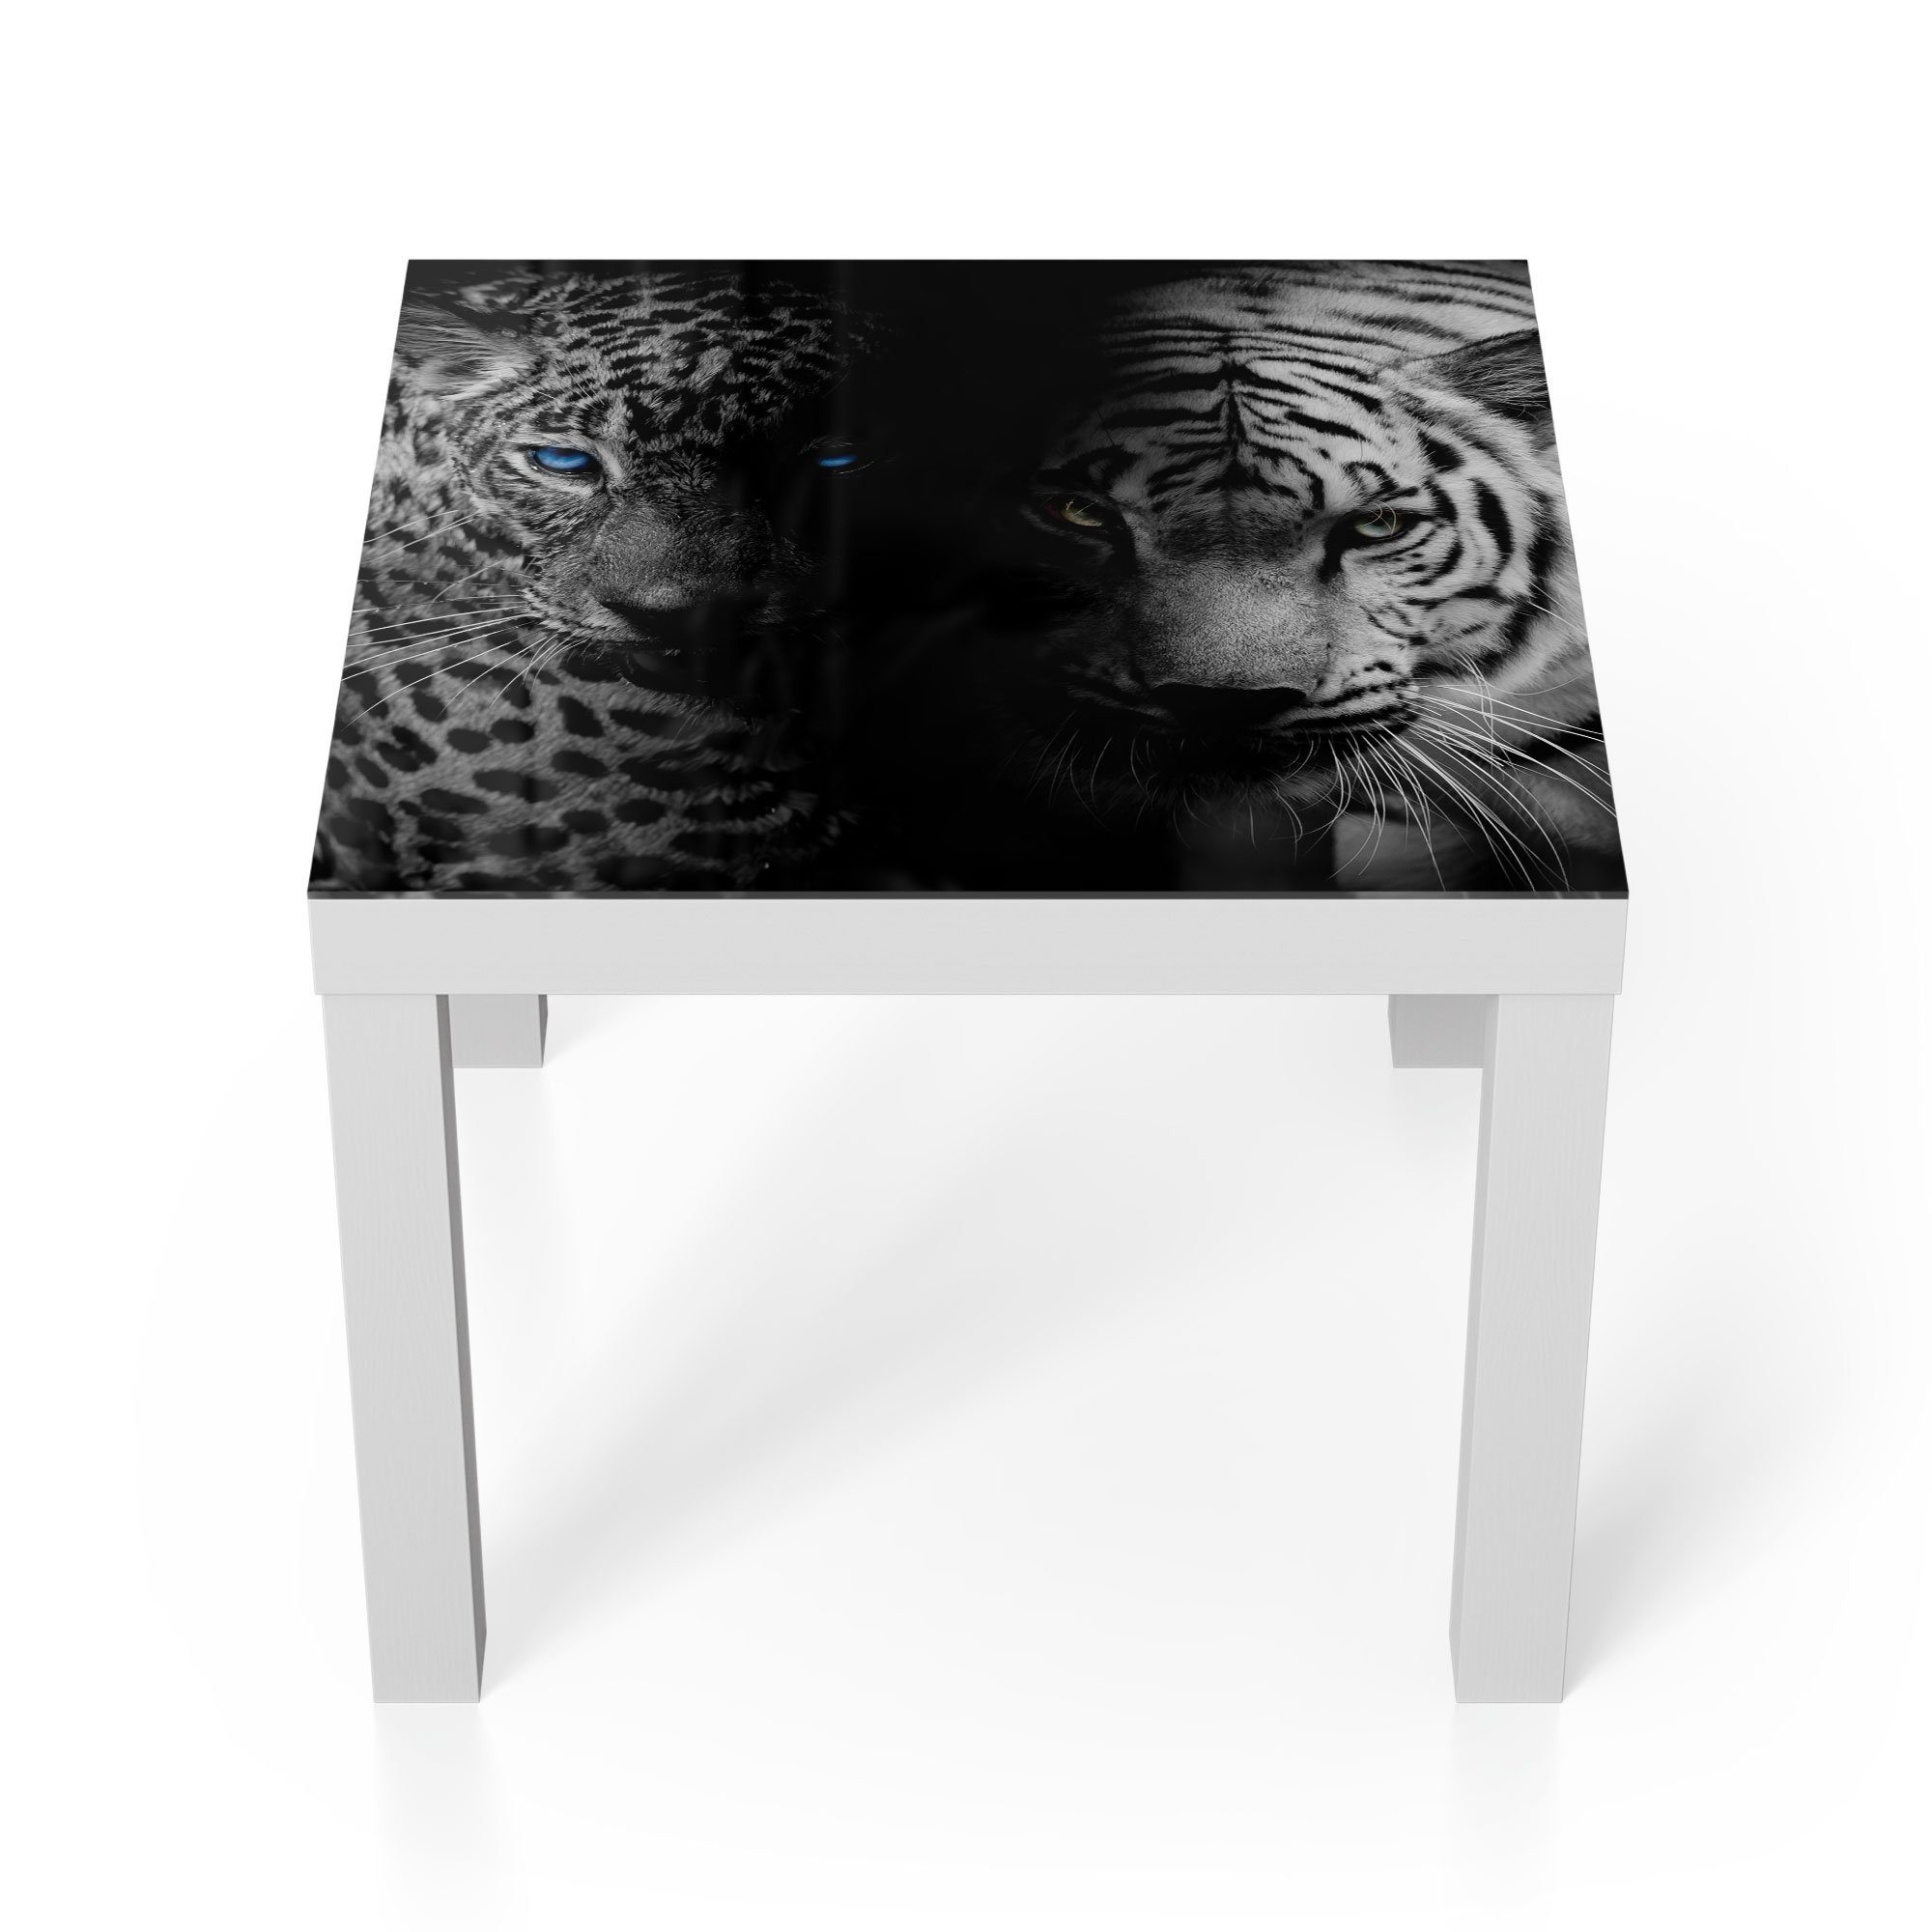 DEQORI Couchtisch 'Leopard und Tiger', Glas Beistelltisch Glastisch modern Weiß